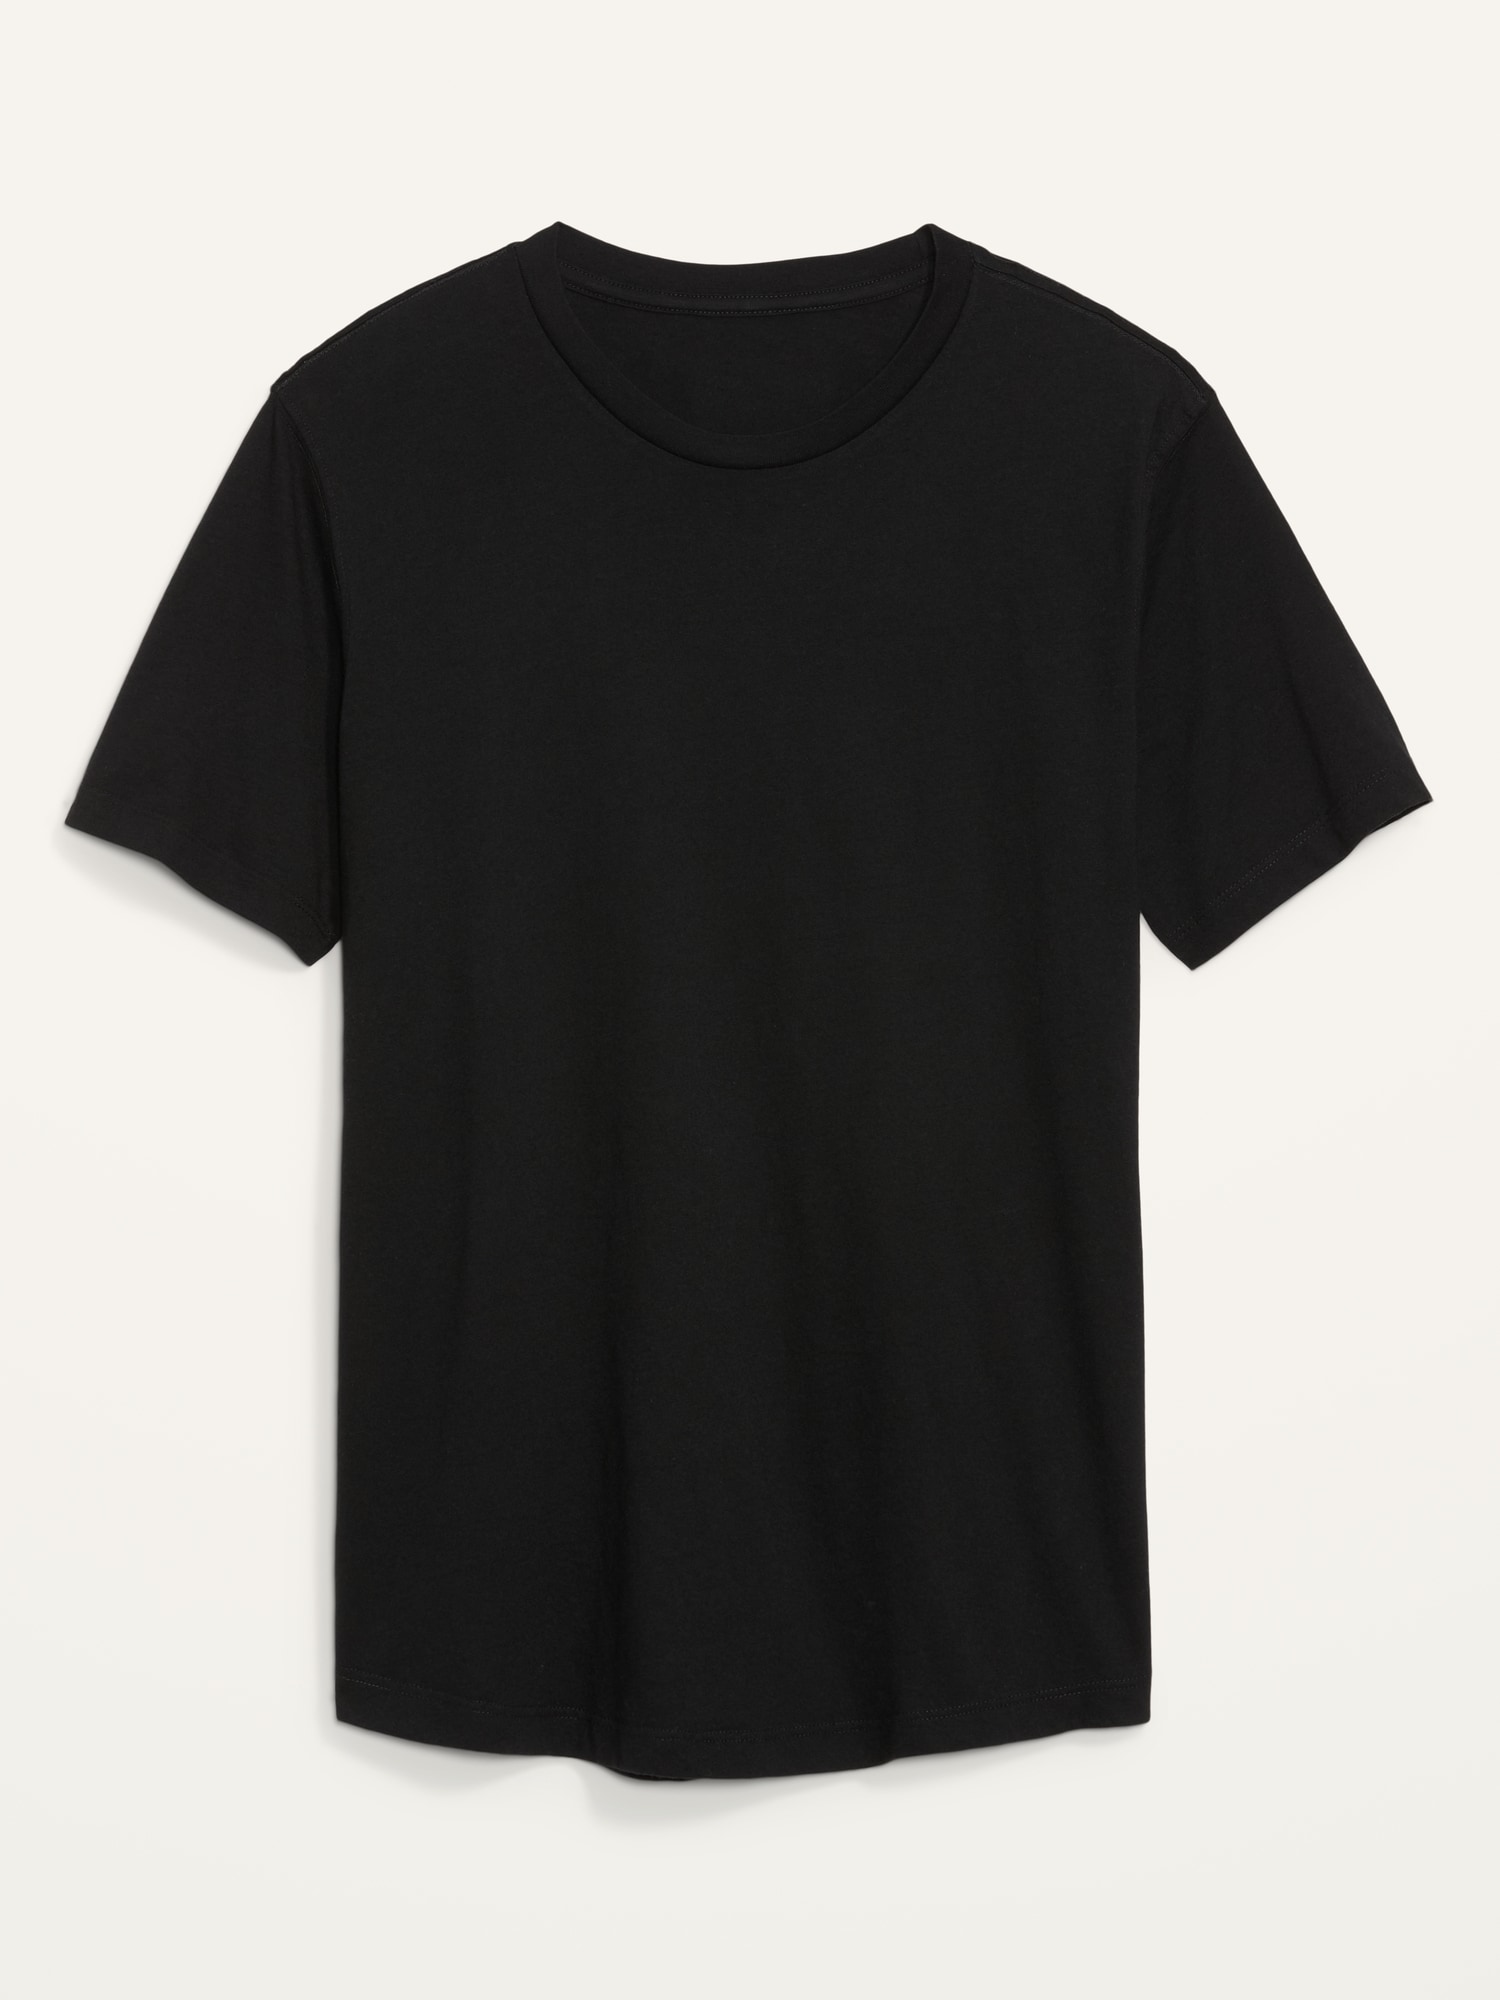 Old Navy Soft-Washed Curved-Hem T-Shirt for Men black. 1